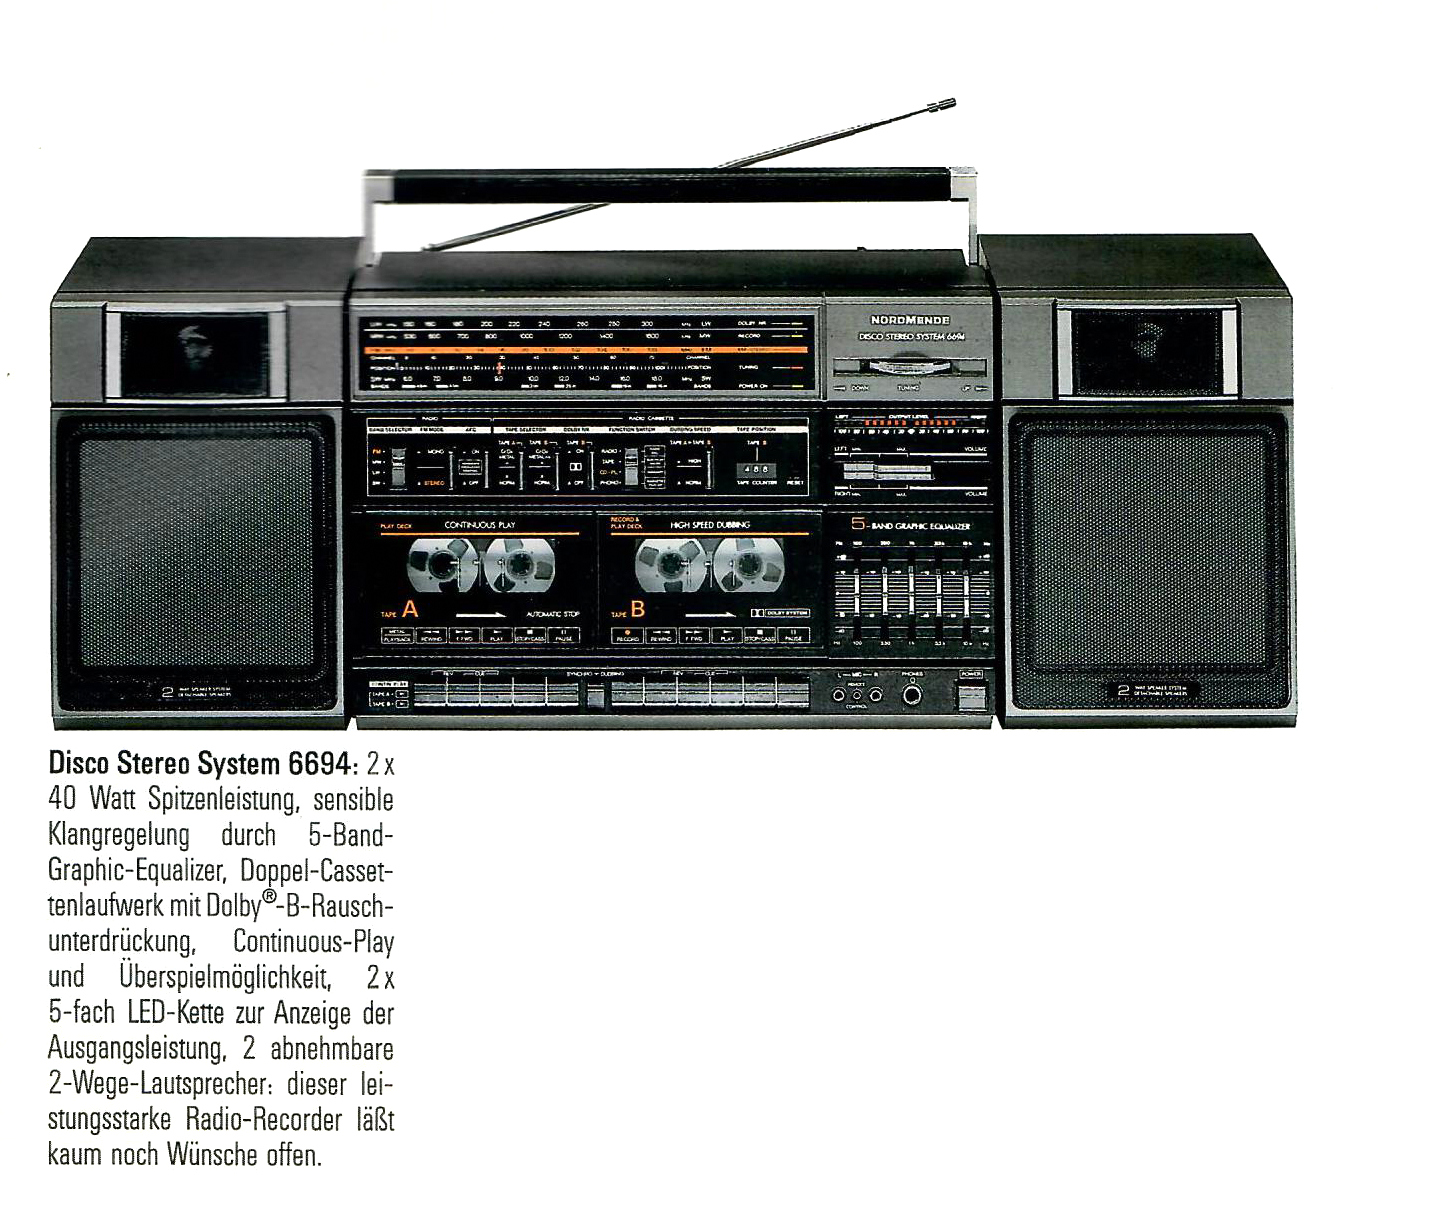 Nordmende Disco Stereo 6694-Prospekt-1987.jpg